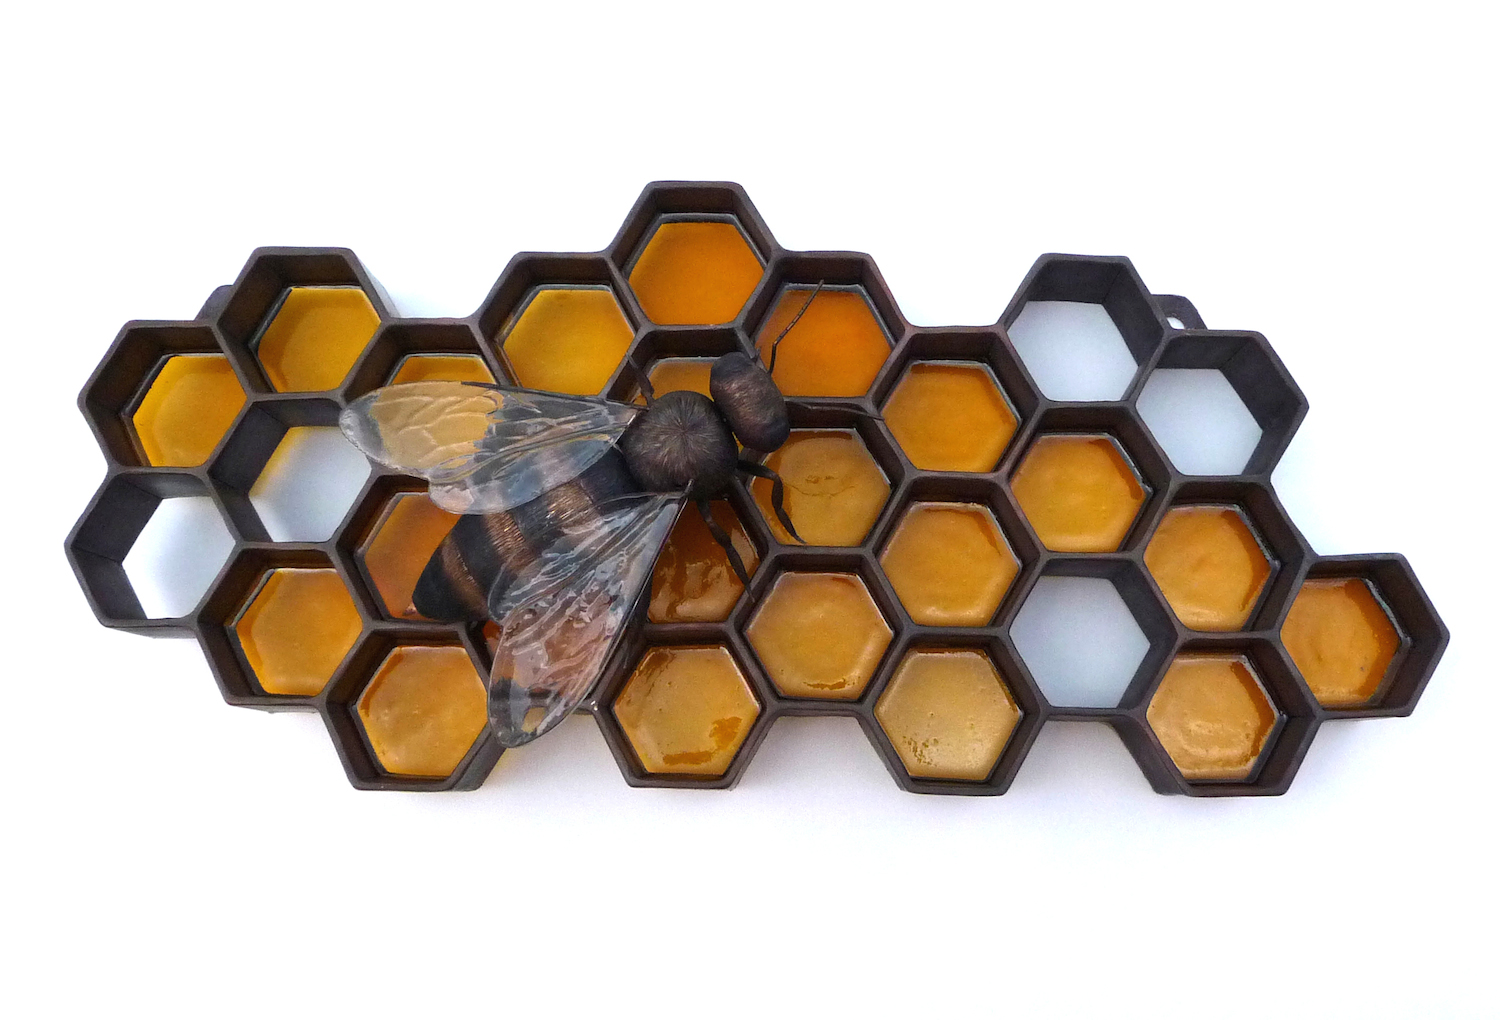 Honeybee Honeycomb Wall Sculpture